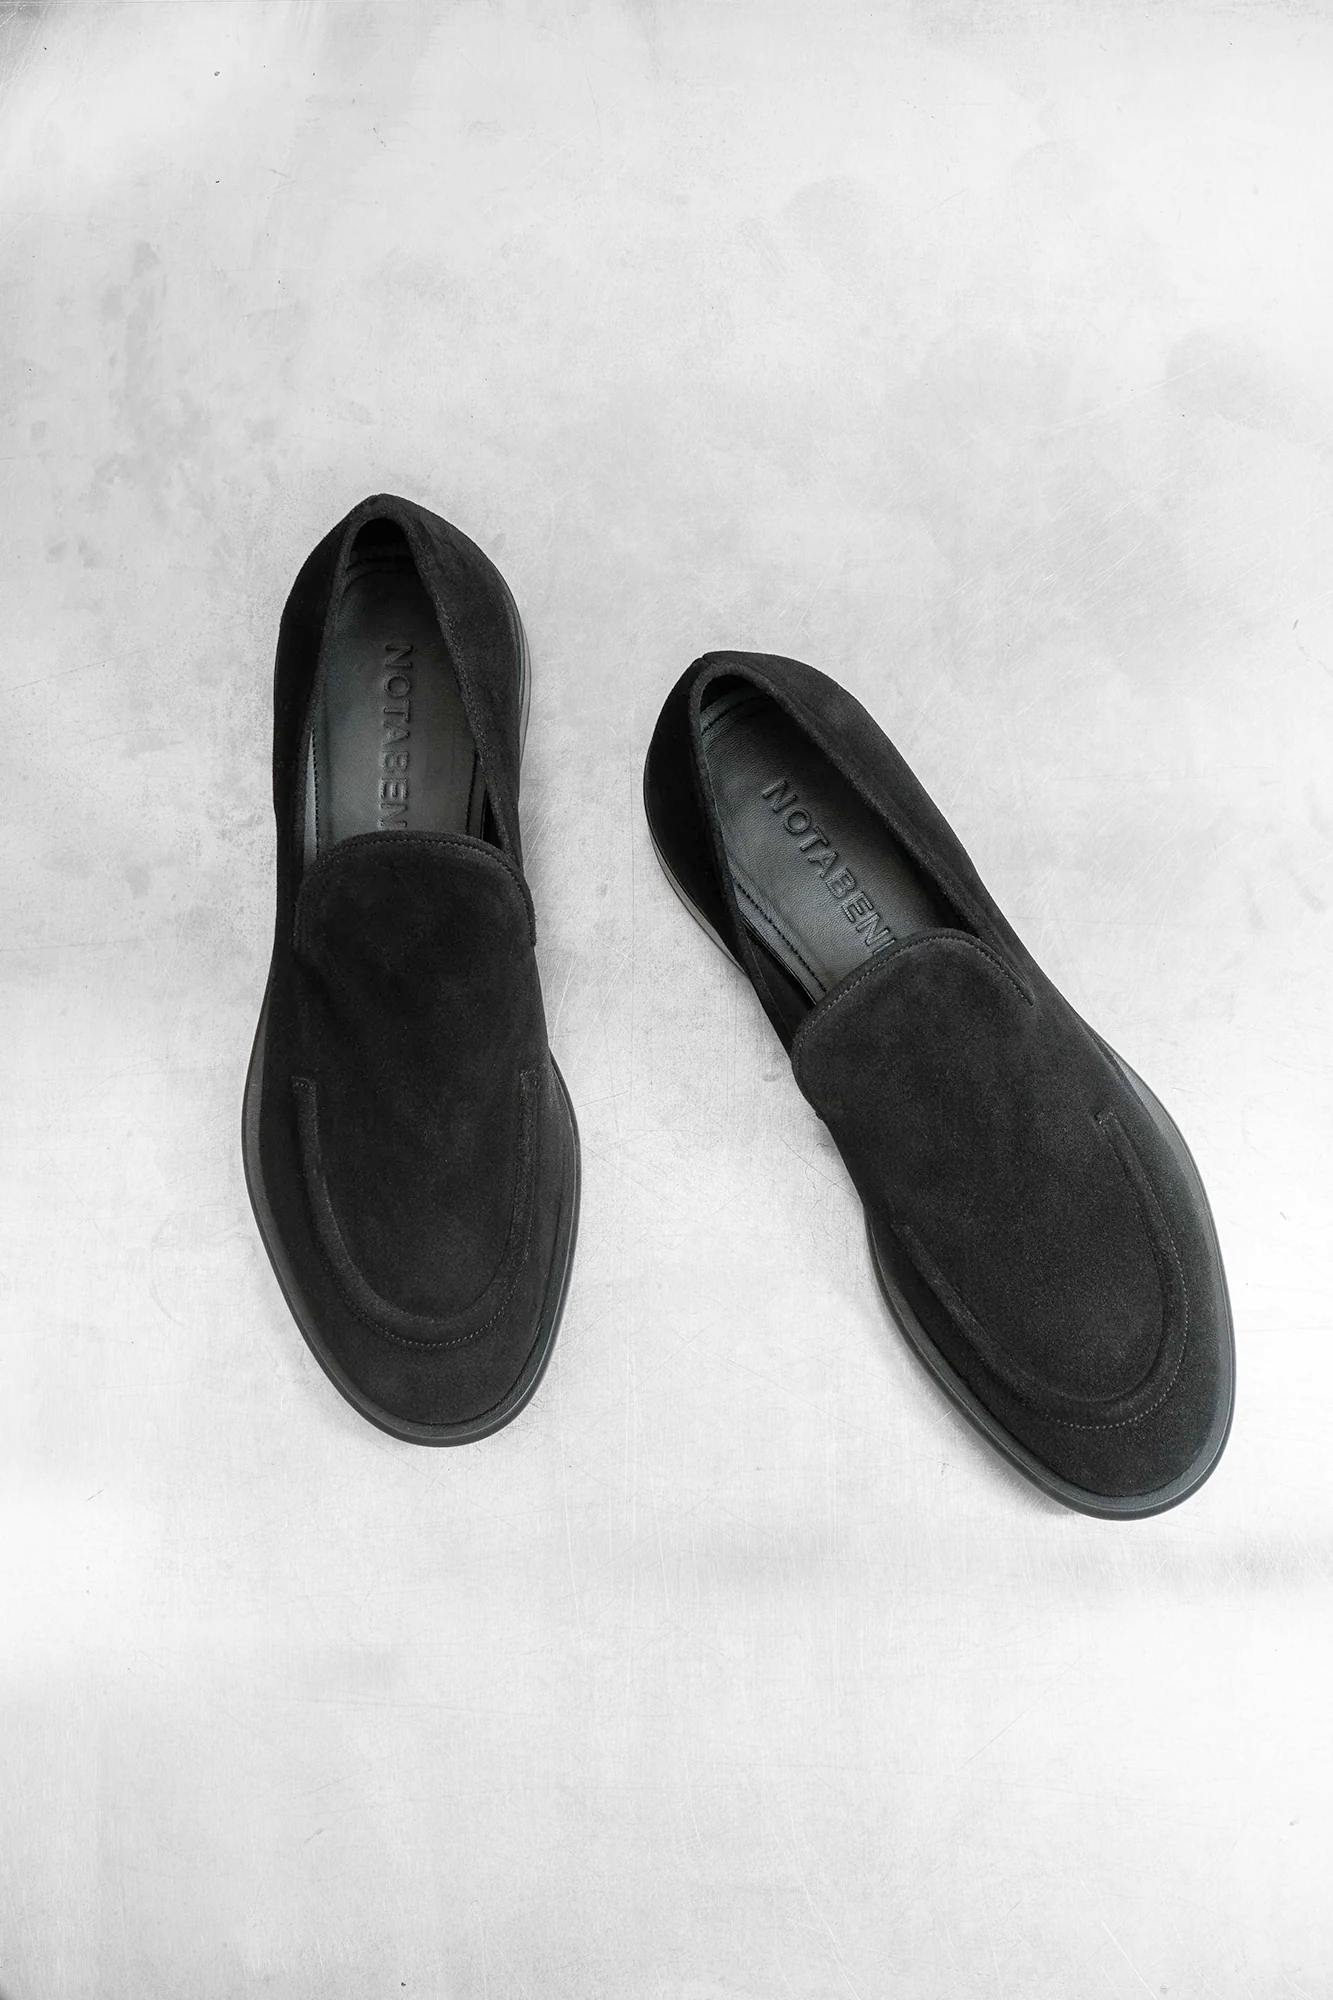 Antonio loafers, black suede